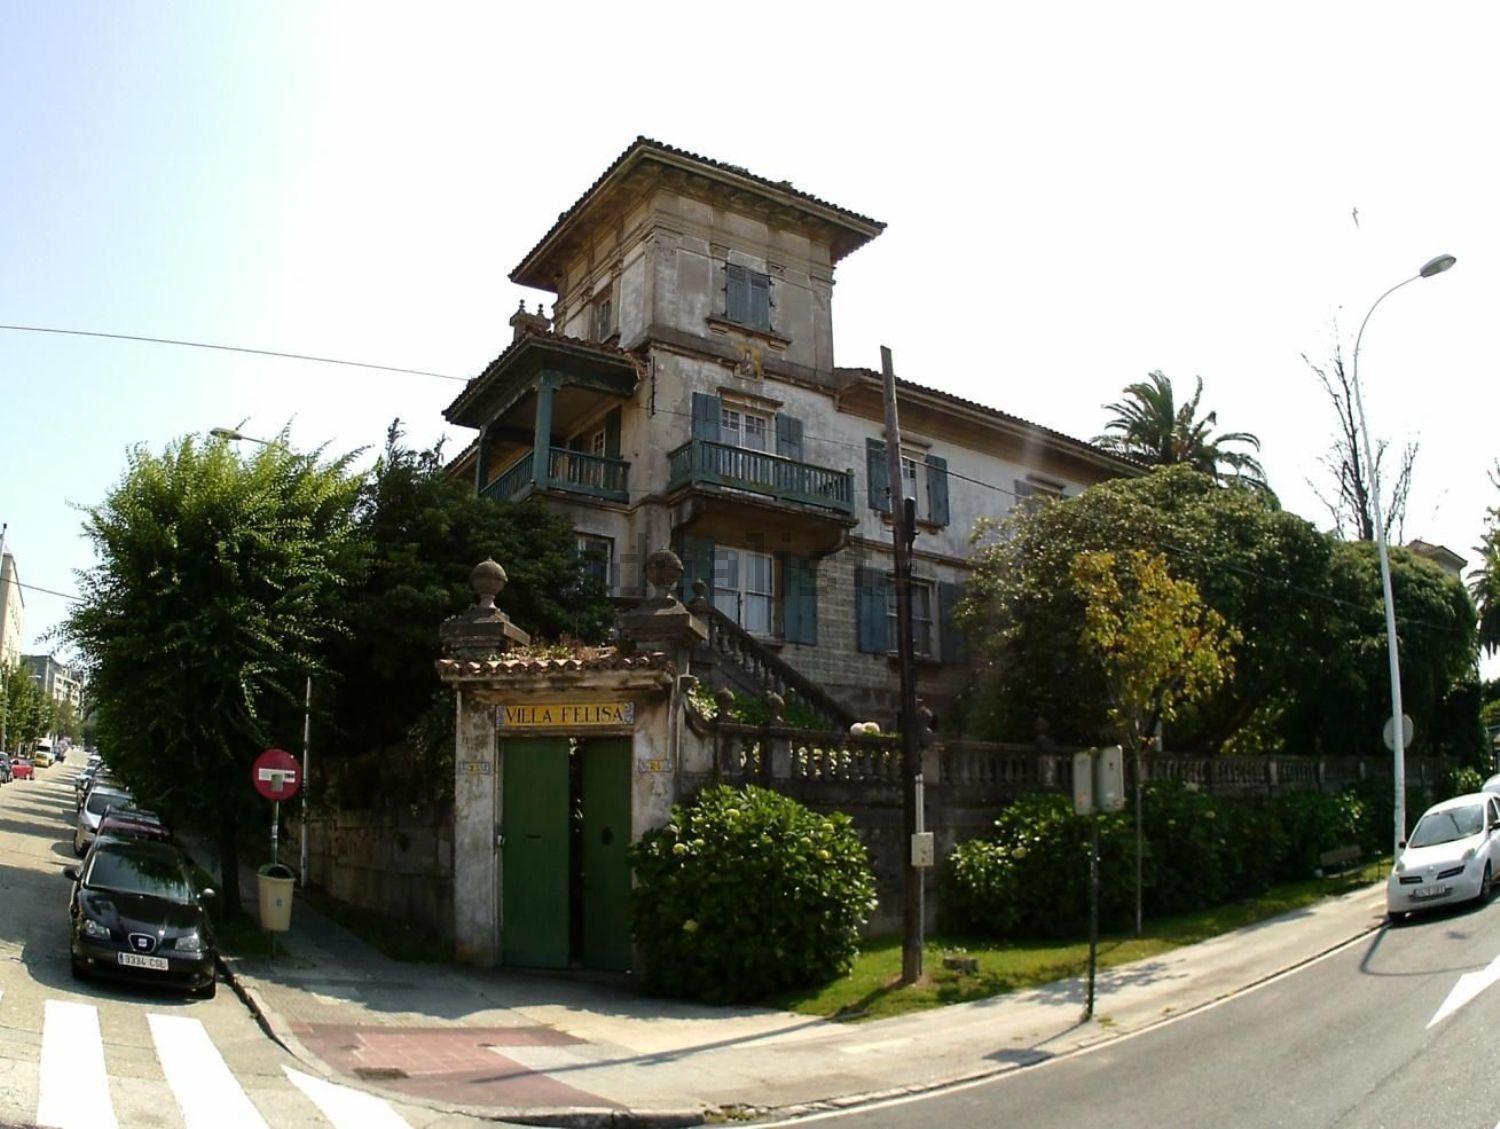 Villa Felisa, situada en Avenida de la Habana 23, se vende por 2.950.000 en idealista